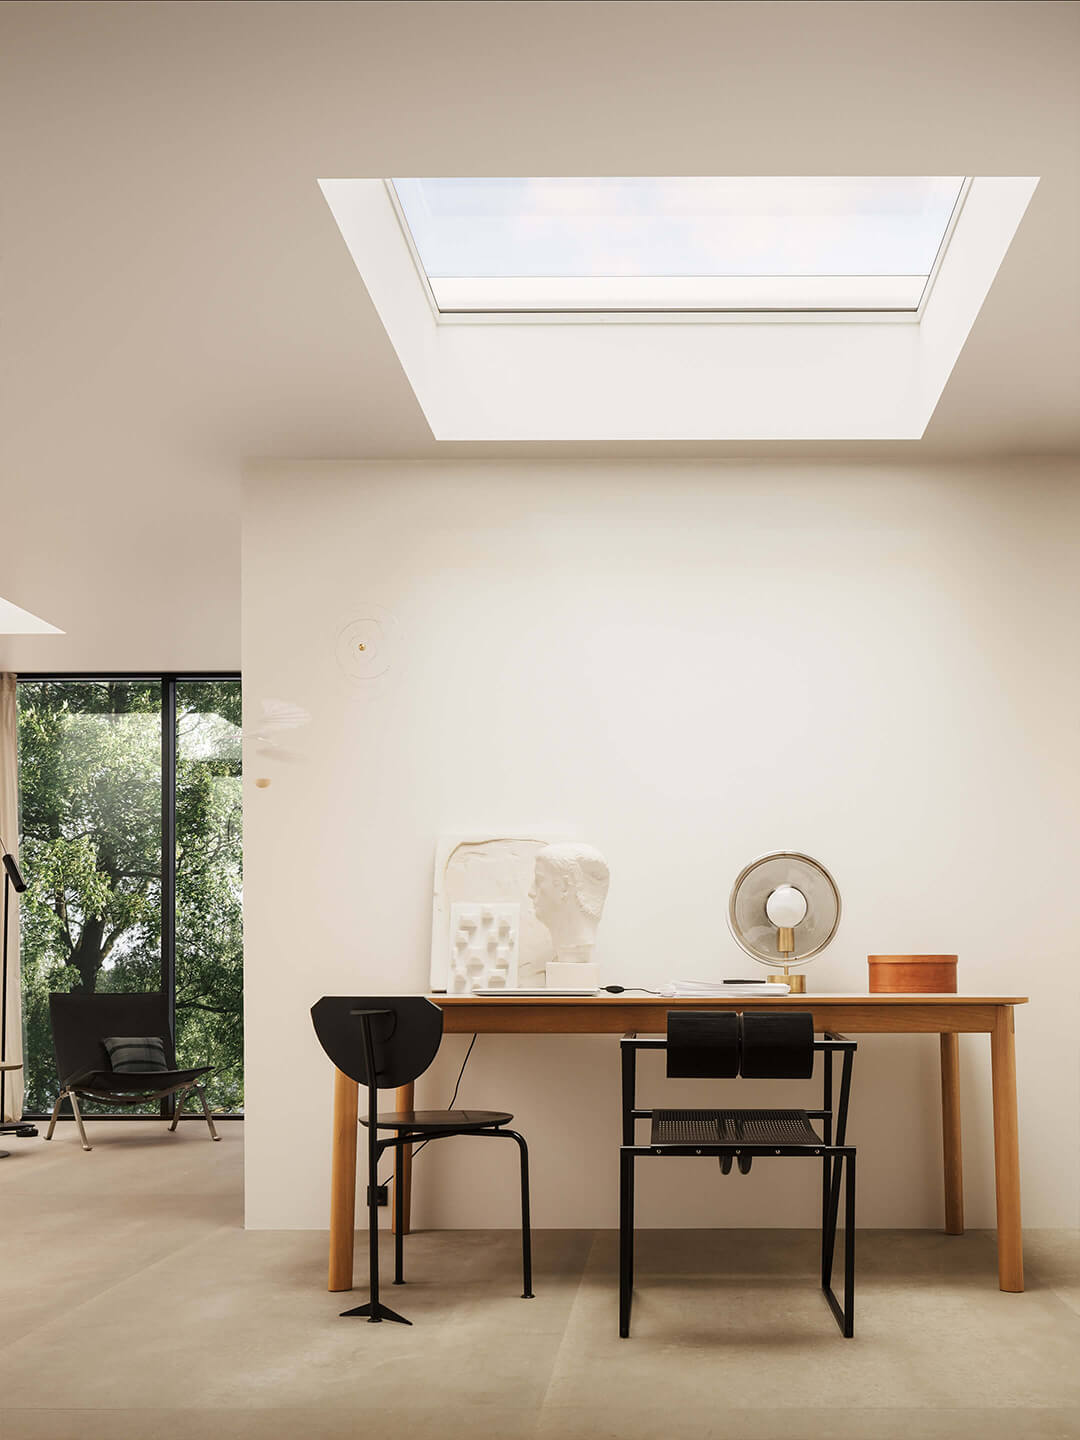 Modernes Homeoffice mit hölzernem Schreibtisch, schwarzem Stuhl und VELUX Dachflächenfenster, das für natürliches Licht sorgt.